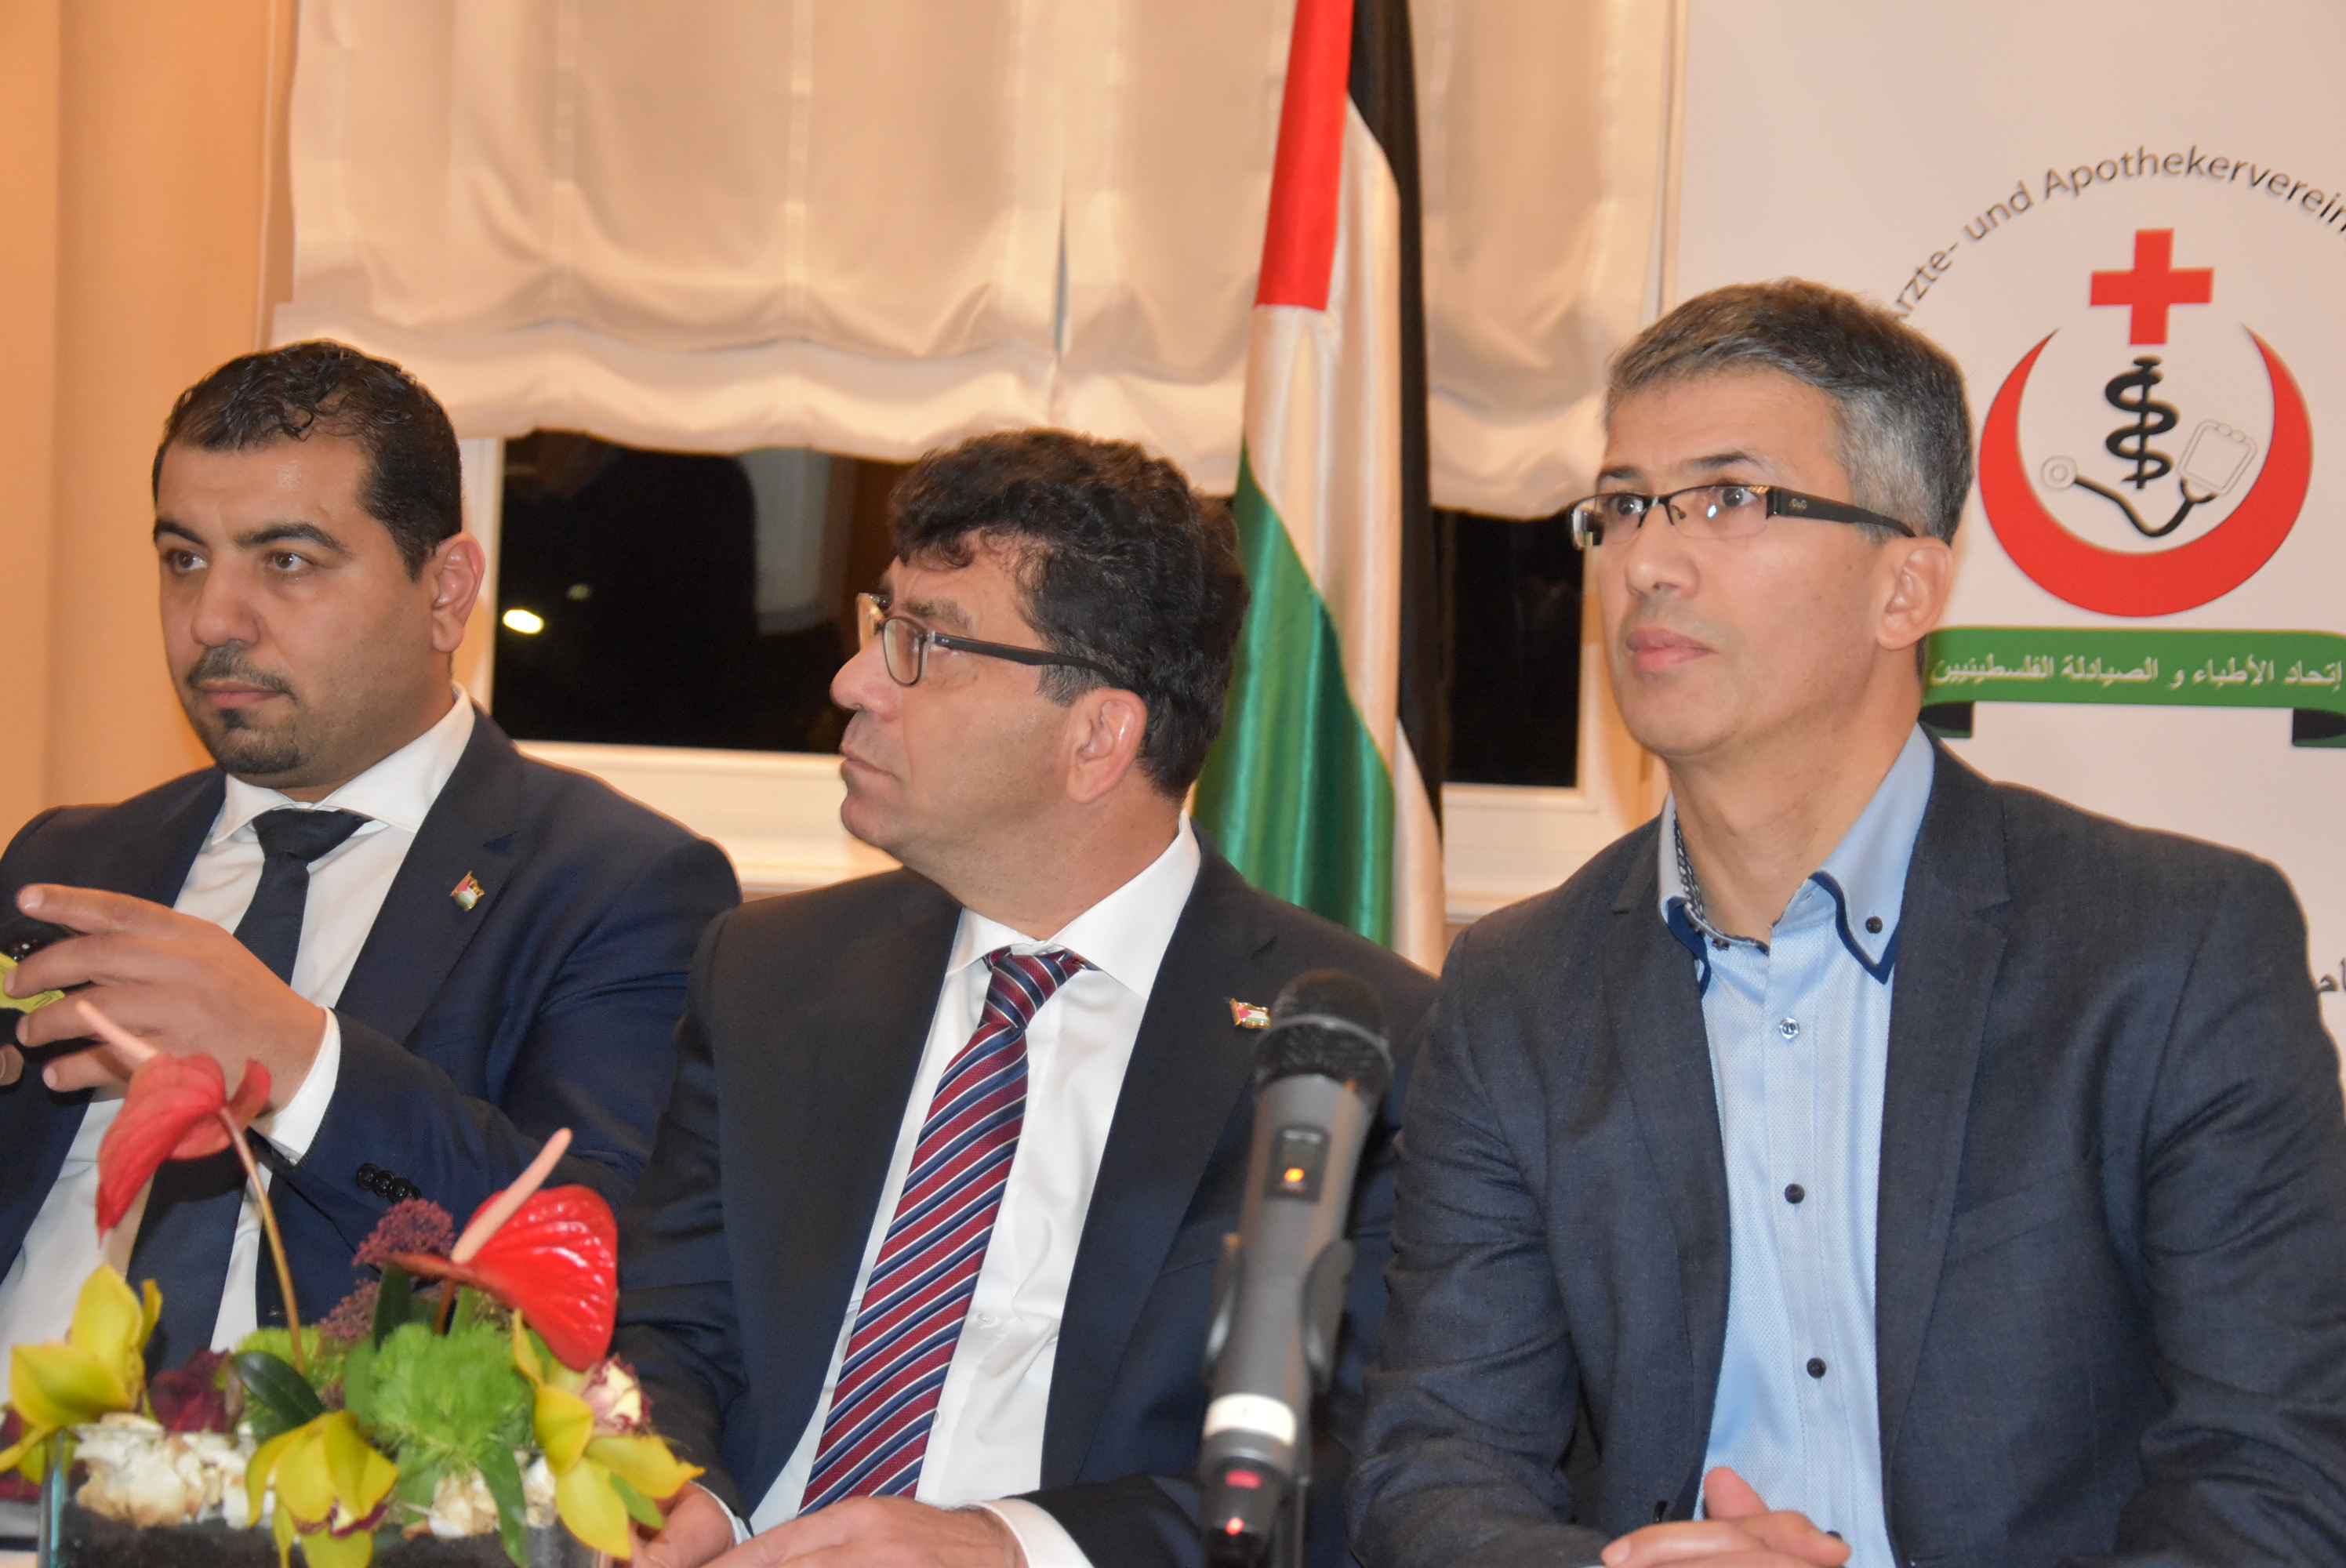 اتحاد الأطباء والصيادلة في ألمانيا يحيي يوم التضامن العالمي مع الشعب الفلسطيني في سفارة فلسطين بألمانيا